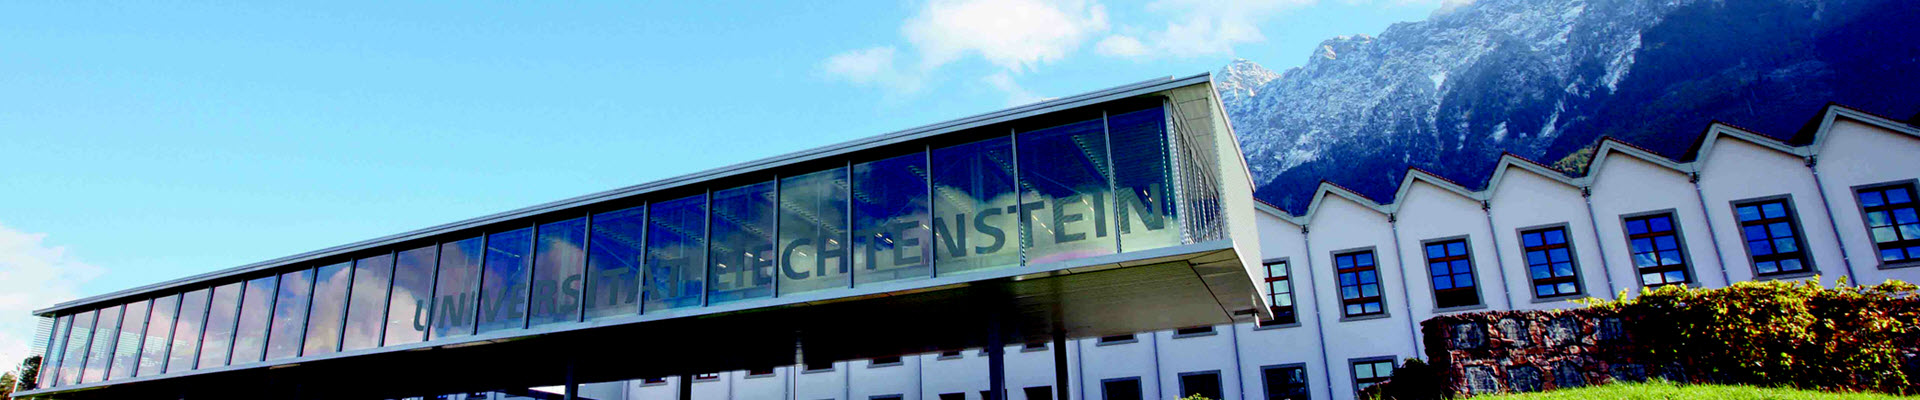 Universität Liechtenstein - Bild